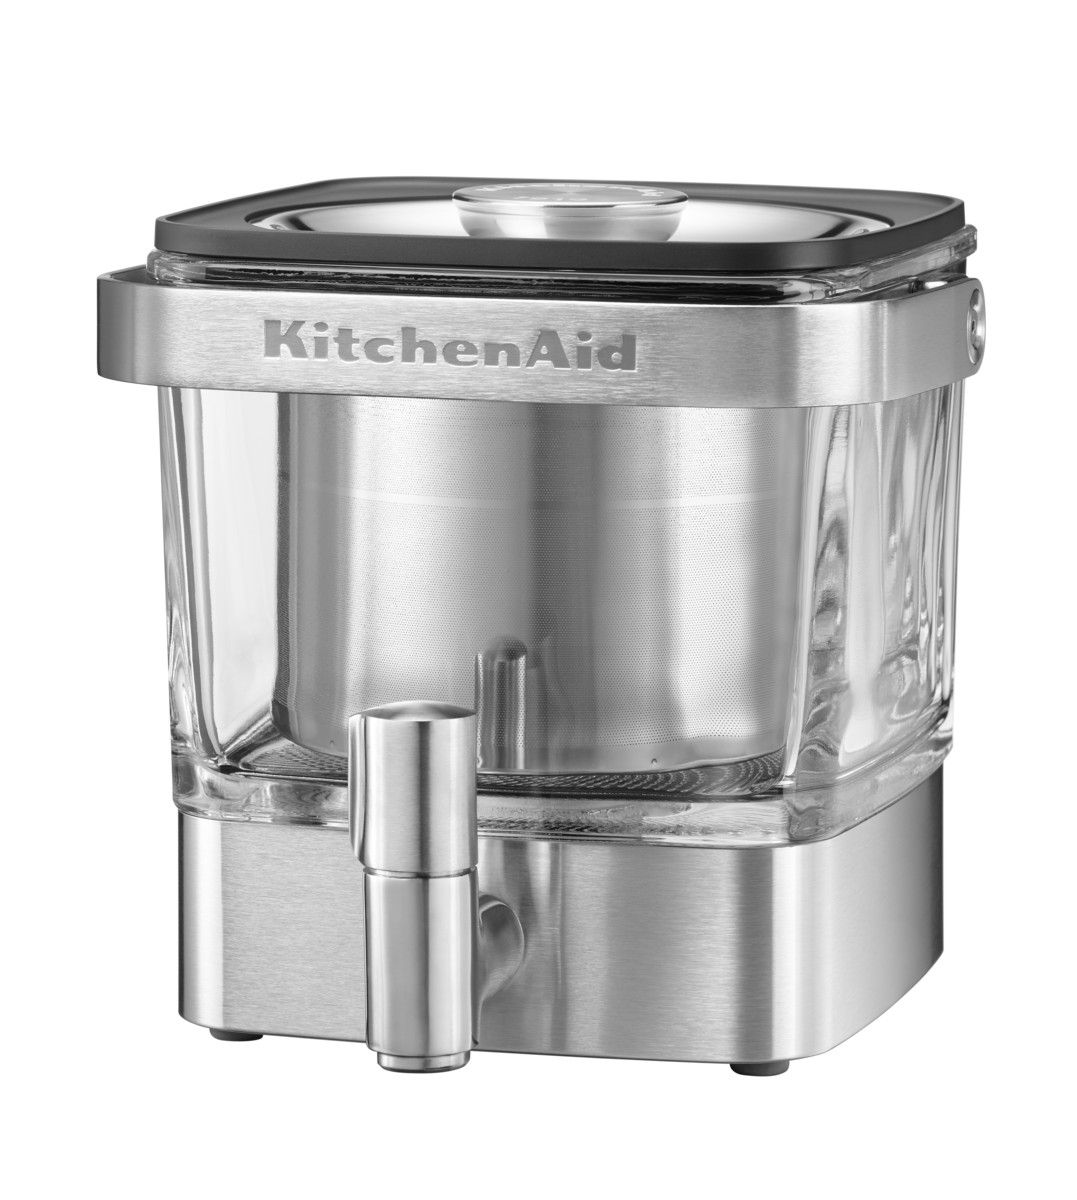 KitchenAid Kávovar 5KCM4212SX pro přípravu kávy za studena - Chefshop.cz